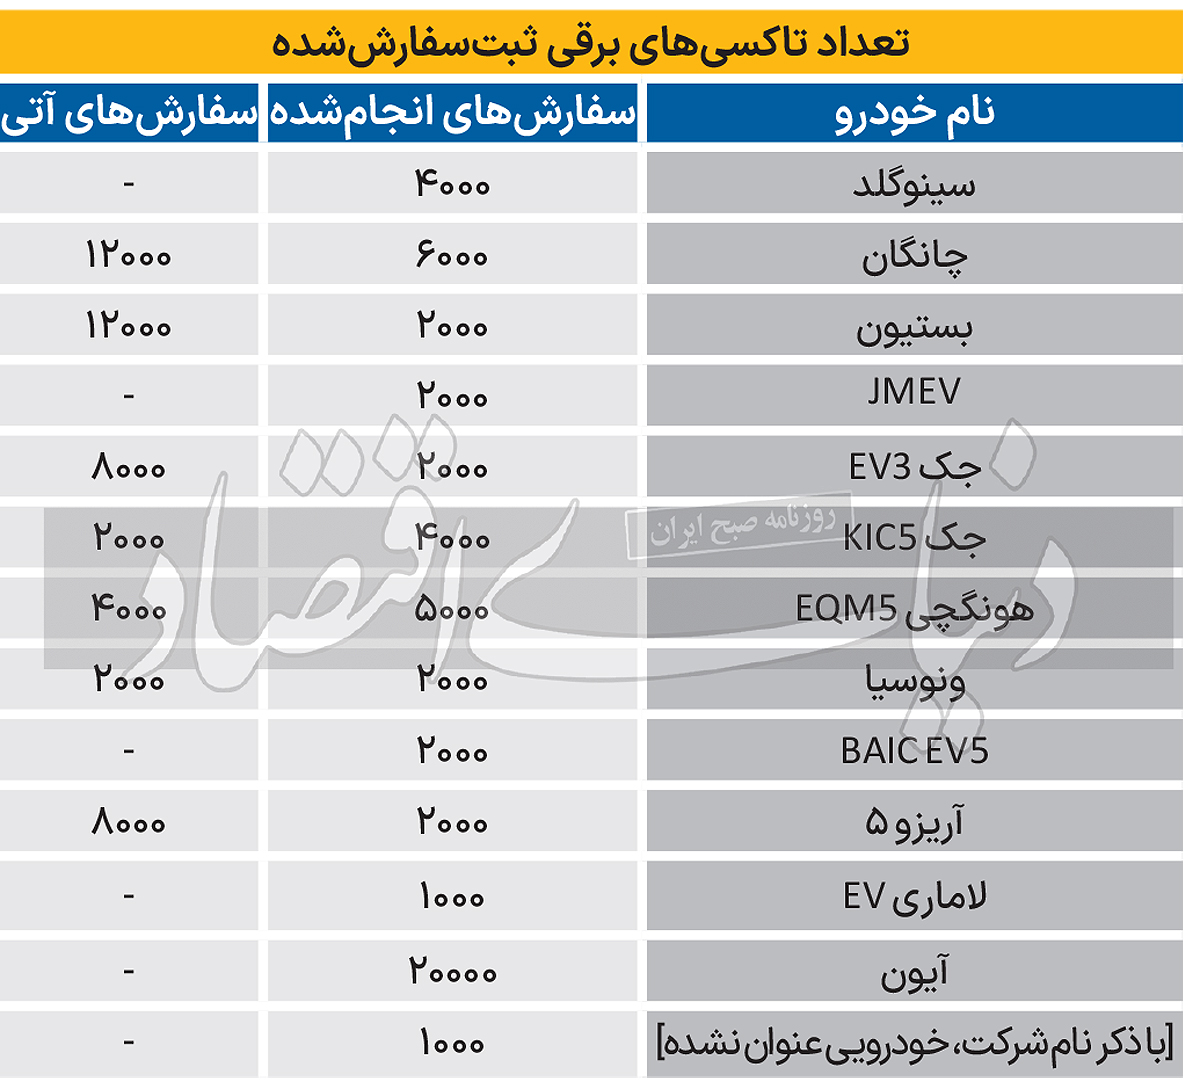 خودروهای برقی چینی در راه ایران + قیمت+کاماپرس